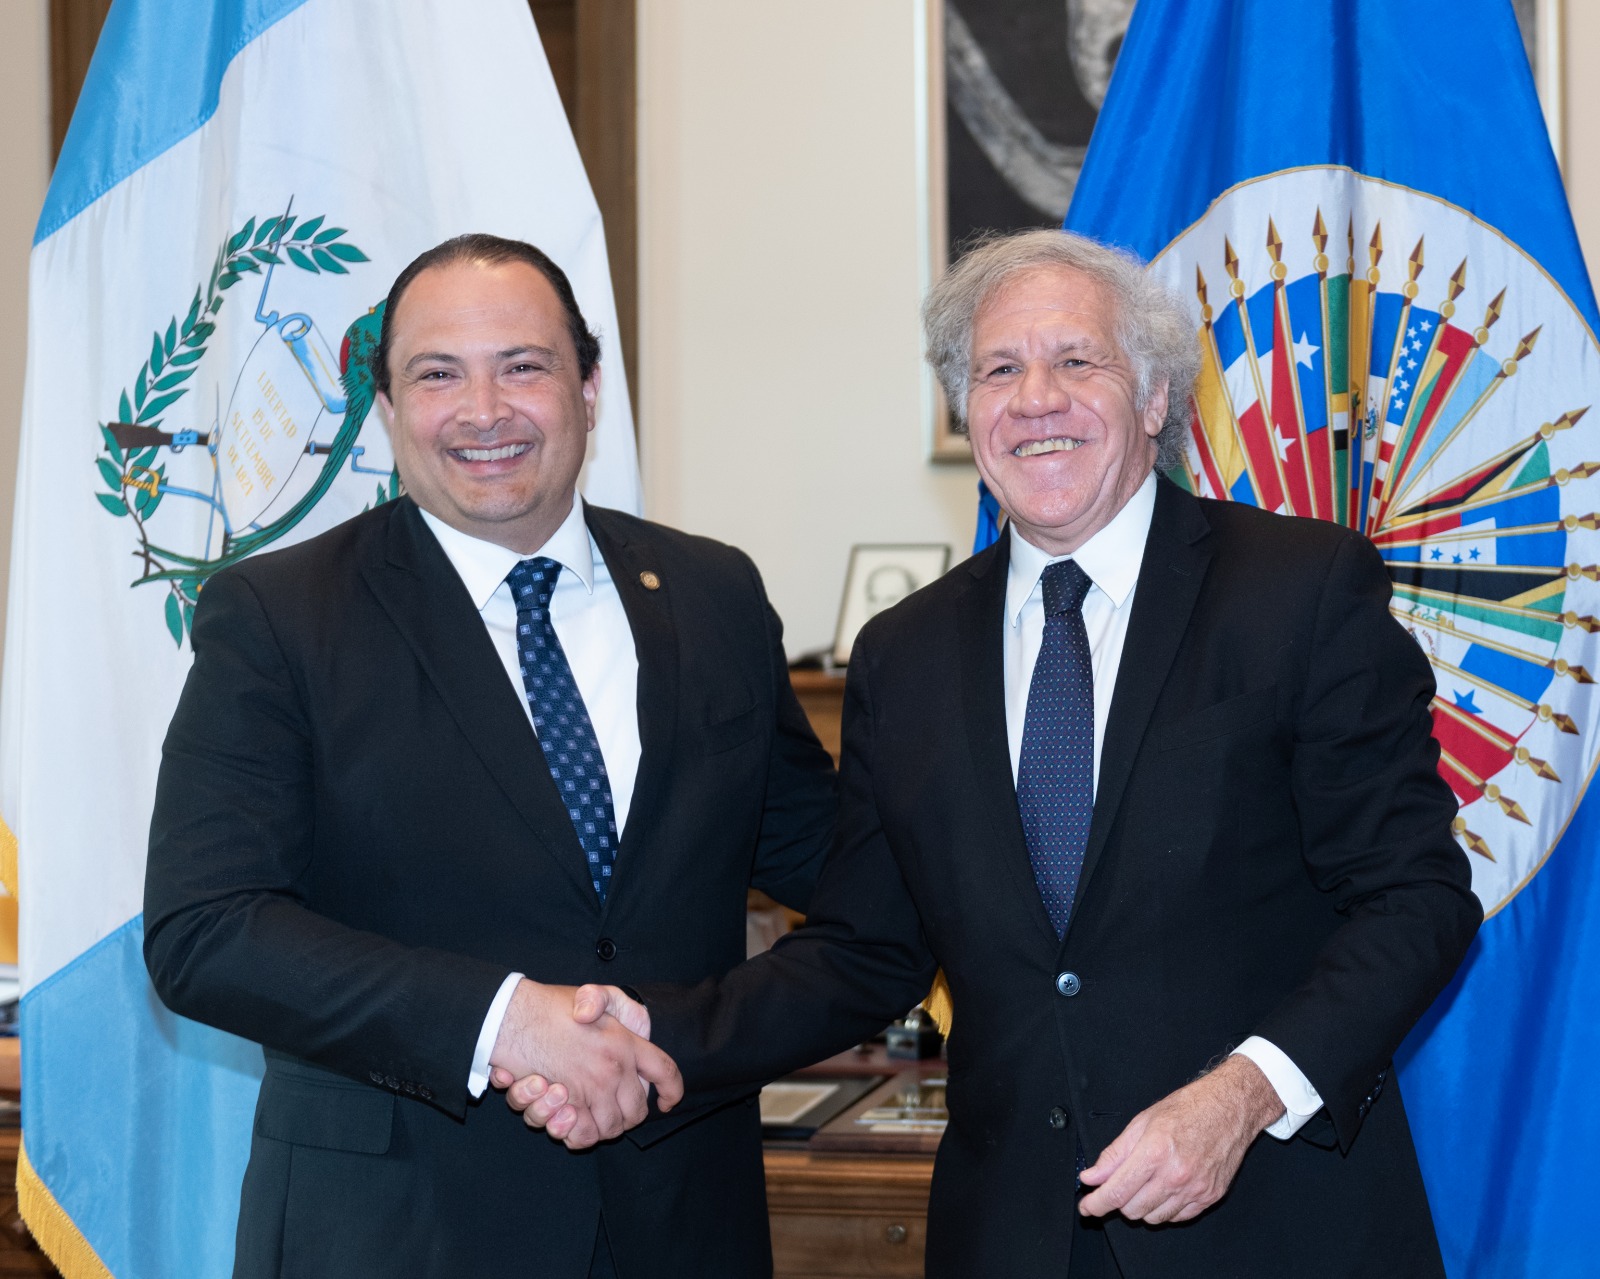 El Secretario General, Luis Almagro, recibió al Canciller de Guatemala, Embajador Mario Búcaro. Conversaron sobre impacto de coyuntura internacional en la región, en especial en los suministros de energía y alimentos. También sobre la agenda de la 52 Asamblea de la OEA a realizarse en Lima, Perú.(26 de septiembre de 2022)